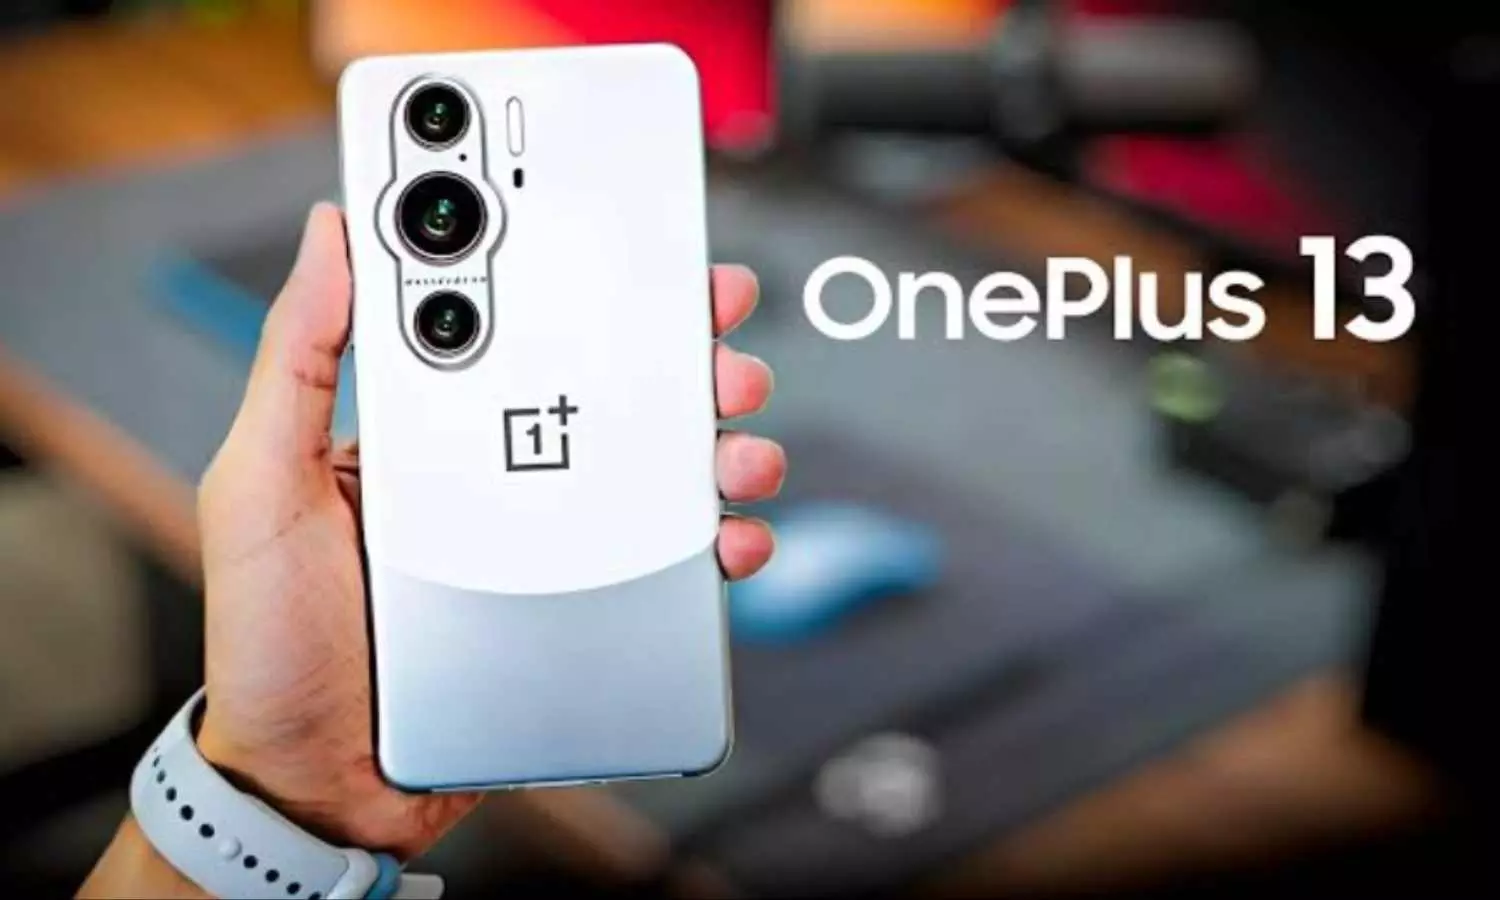 OnePlus 13 Features Update: फोन के फीचर में होगा बड़ा बदलाव, लॉन्च से पहले लीक हुआ डिटेल्स